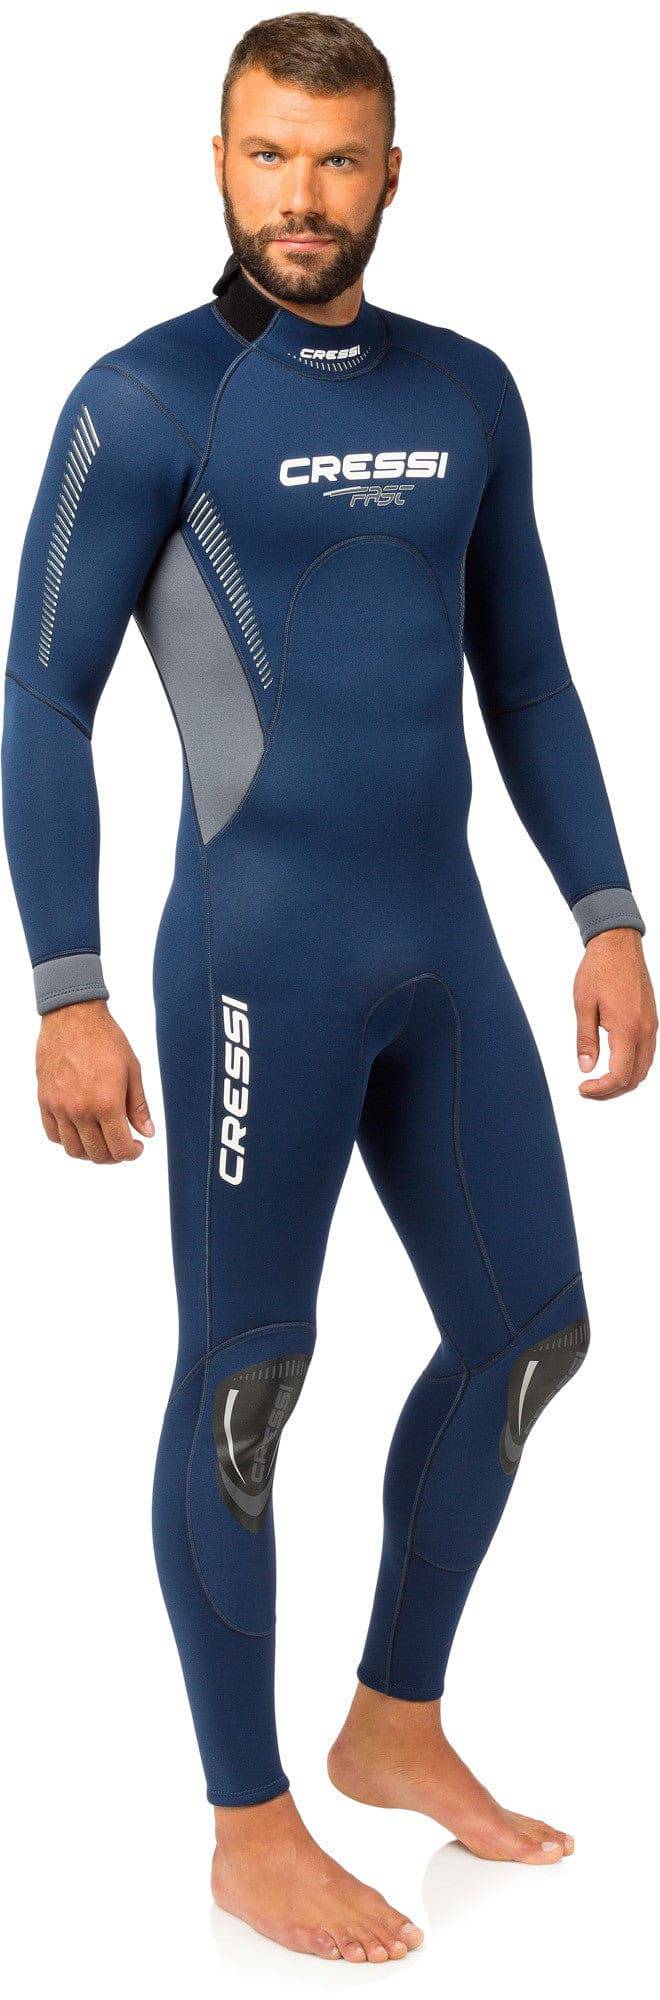 Cressi Fast Wetsuit - Dive & Fish dive shop